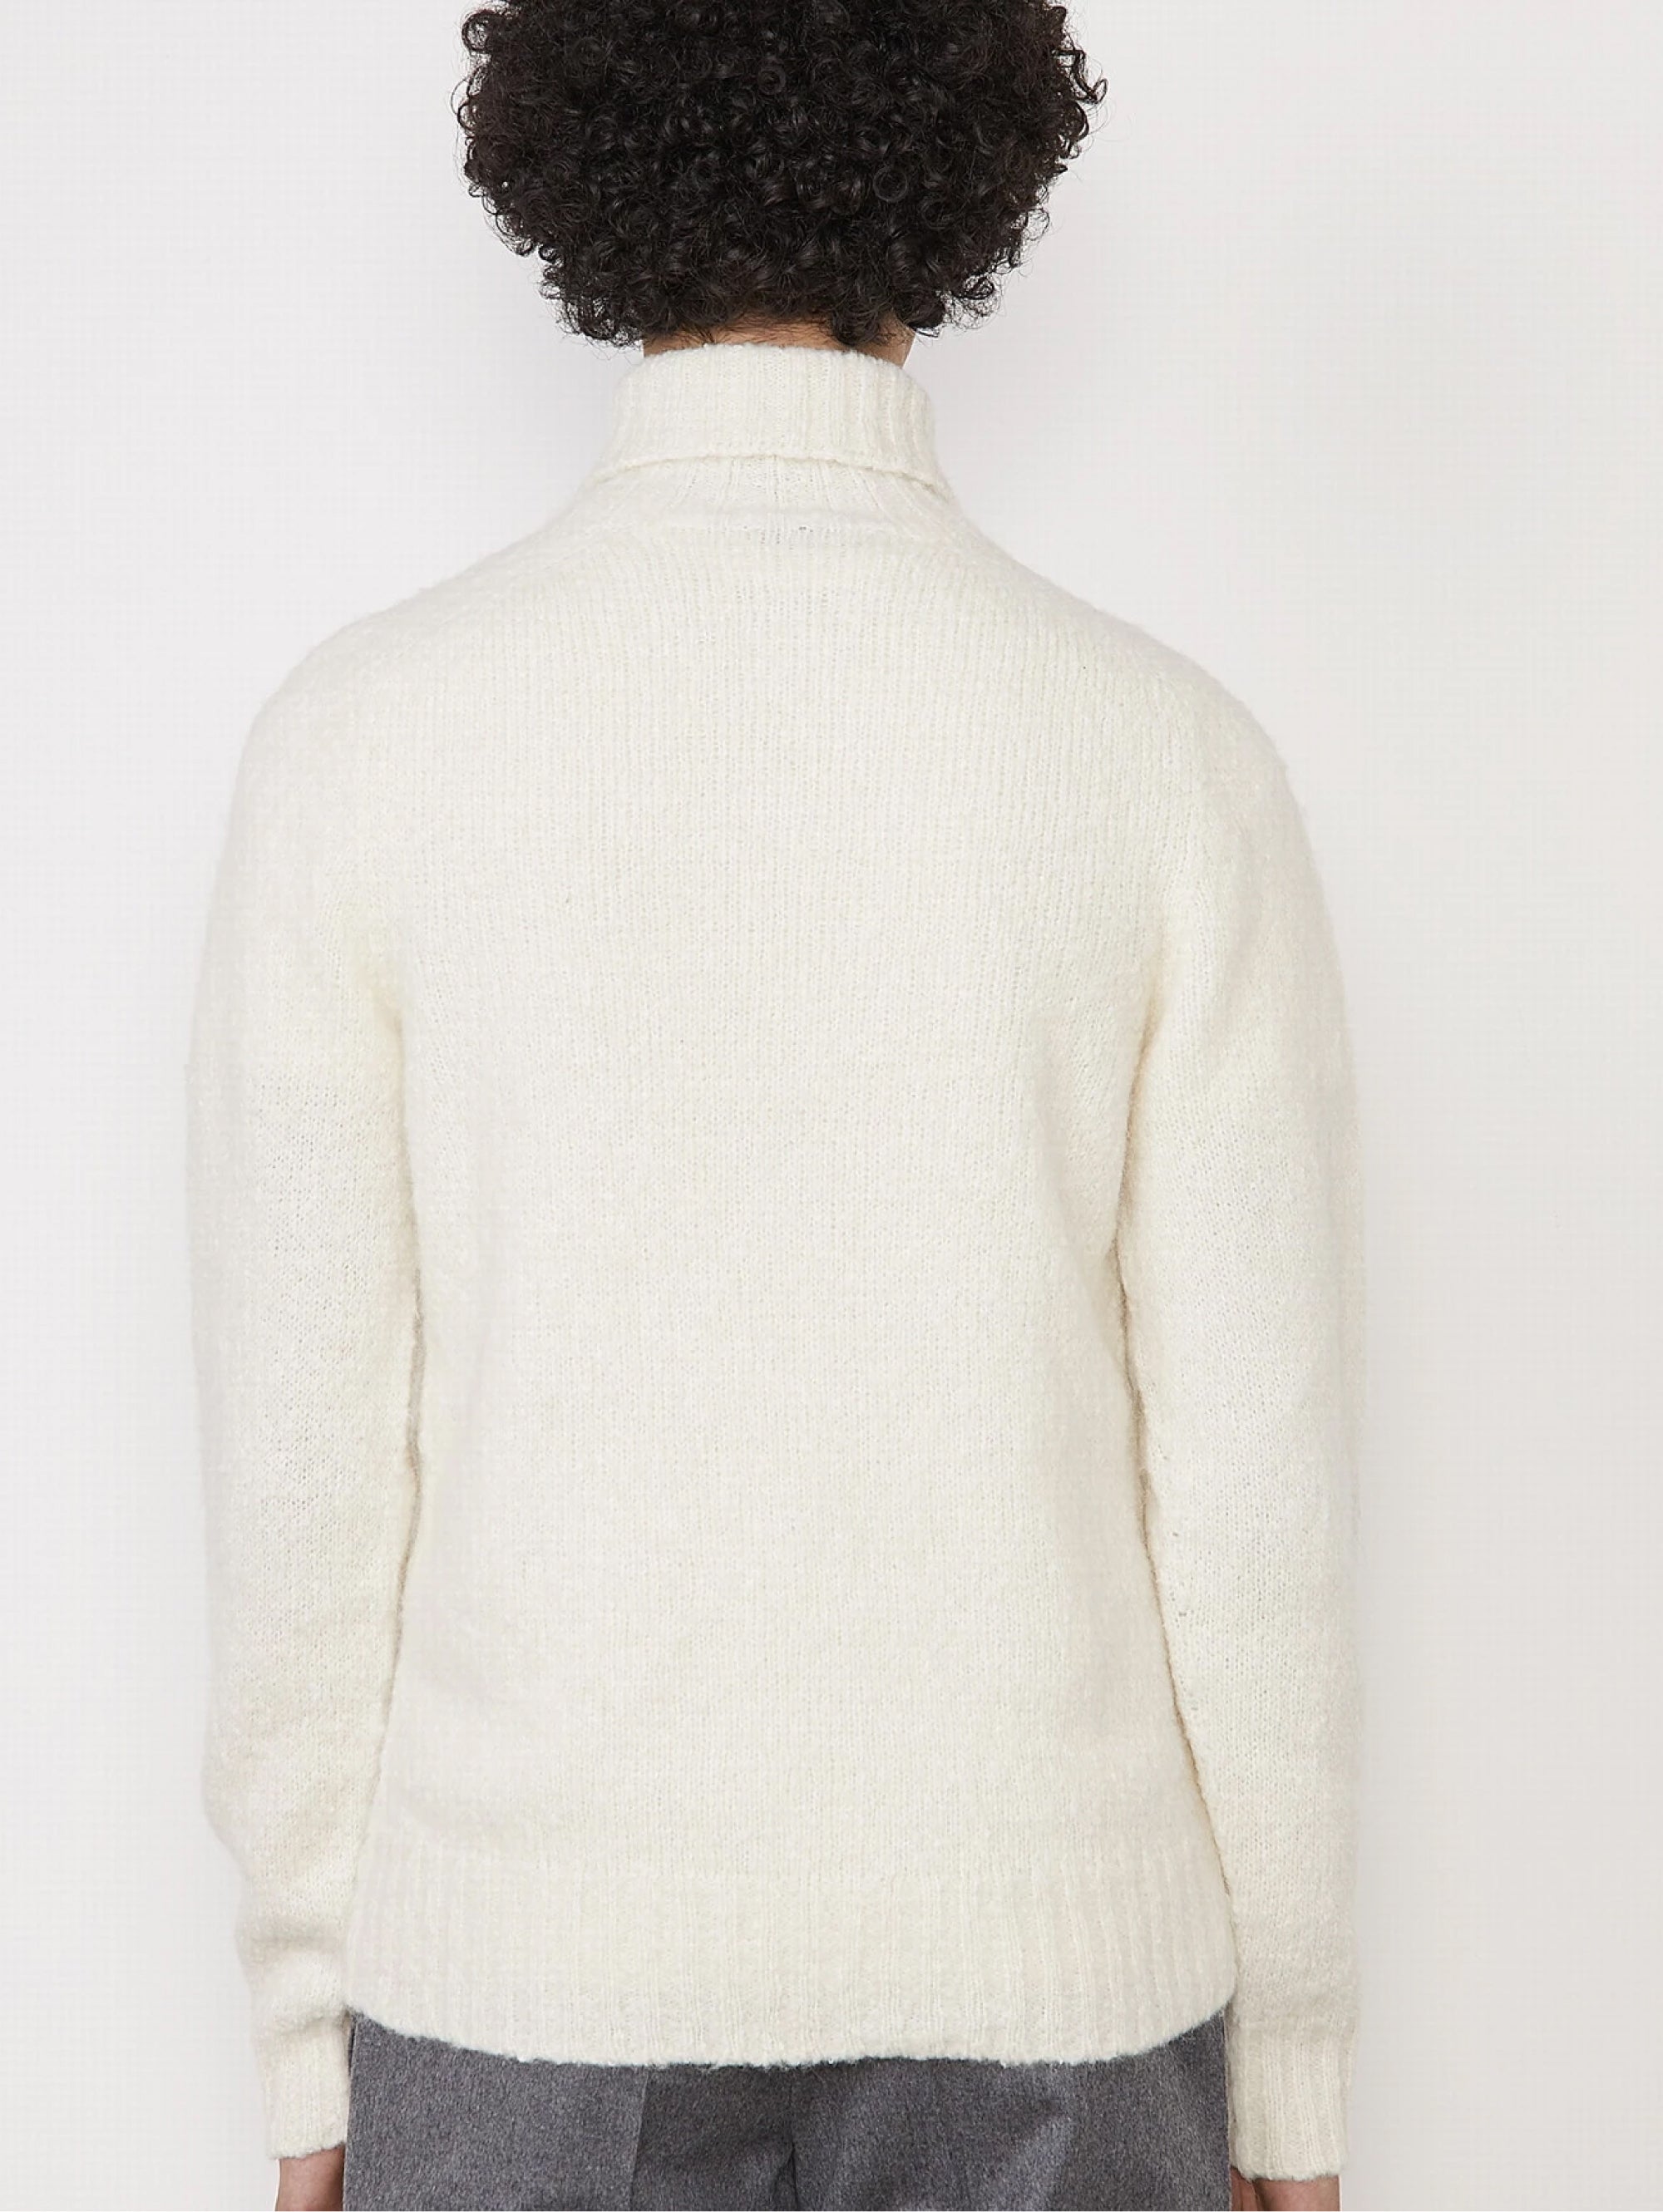 Ecrufarbener Pullover mit hohem Kragen